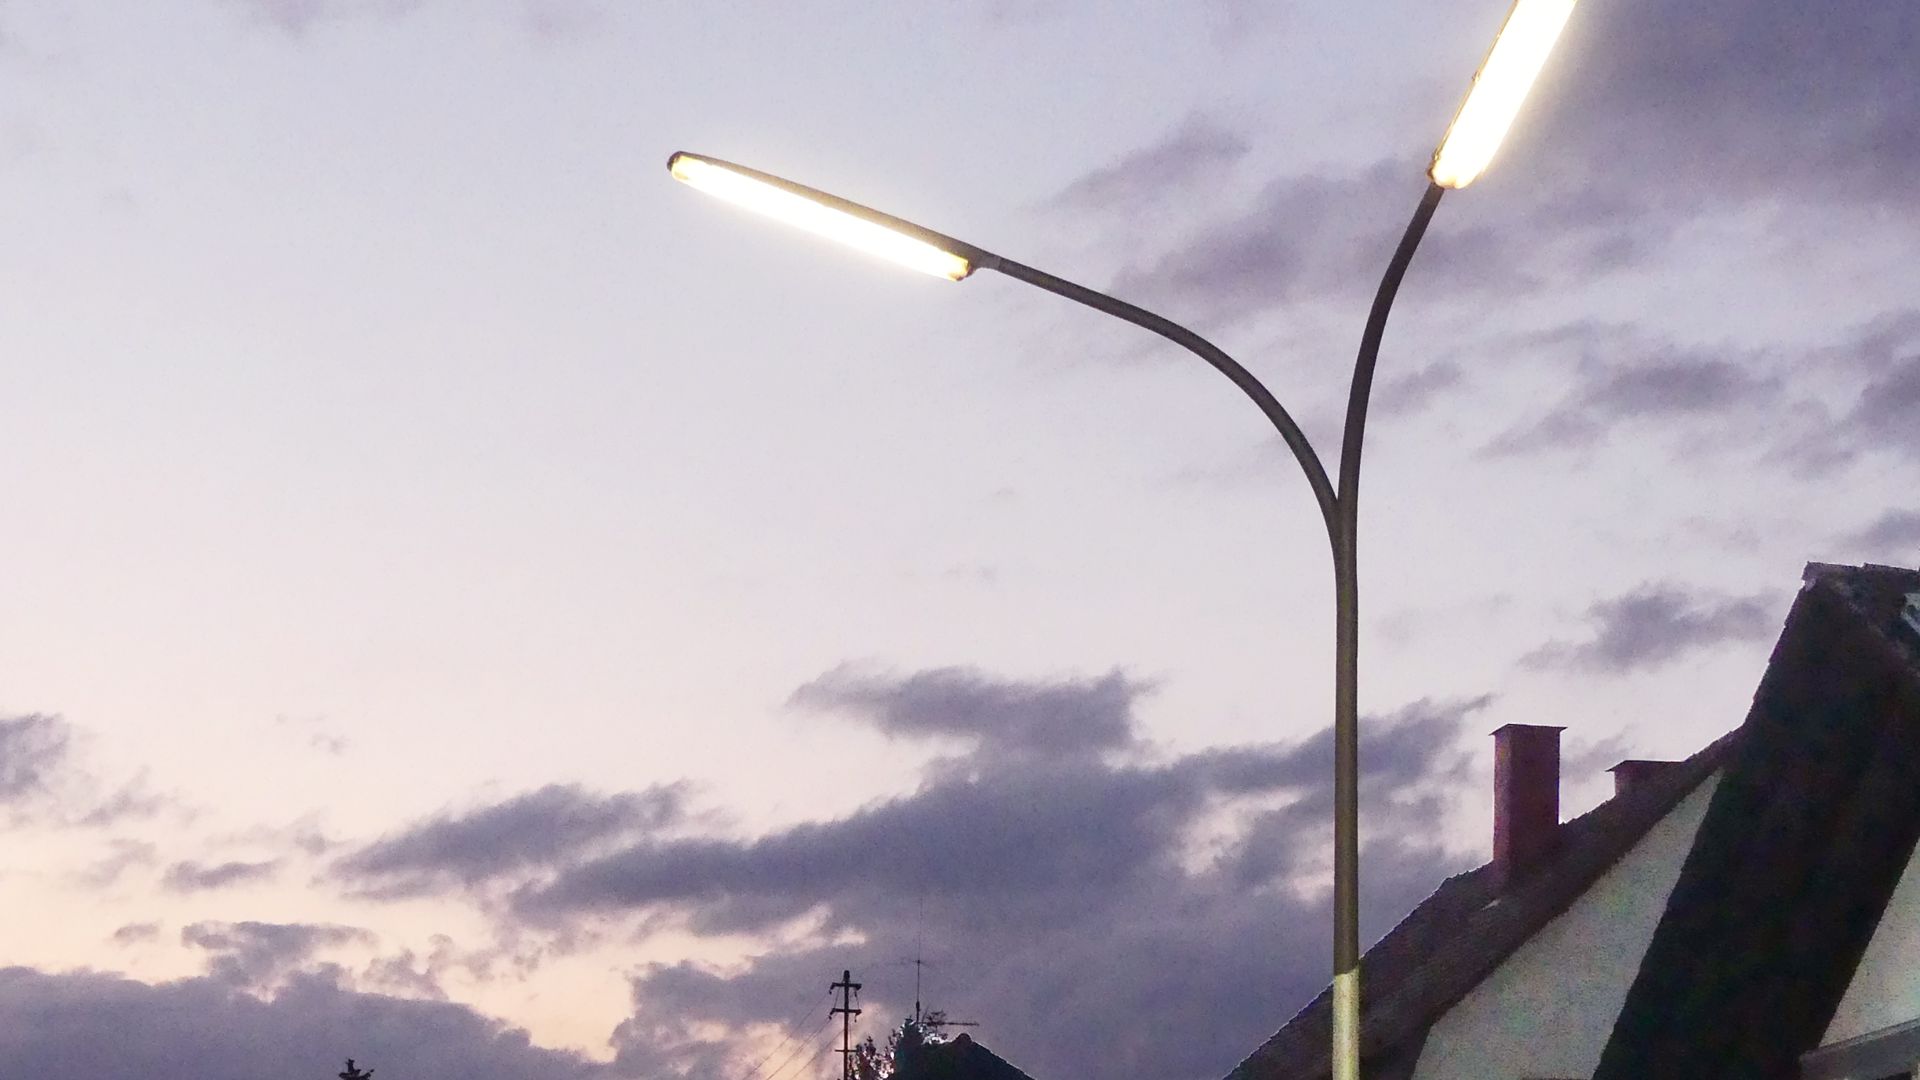  Mit der Umrüstung der Straßenleuchten auf LED sehen Kommunen im nördlichen Landkreis ihre Energieeinsparziele erreicht.